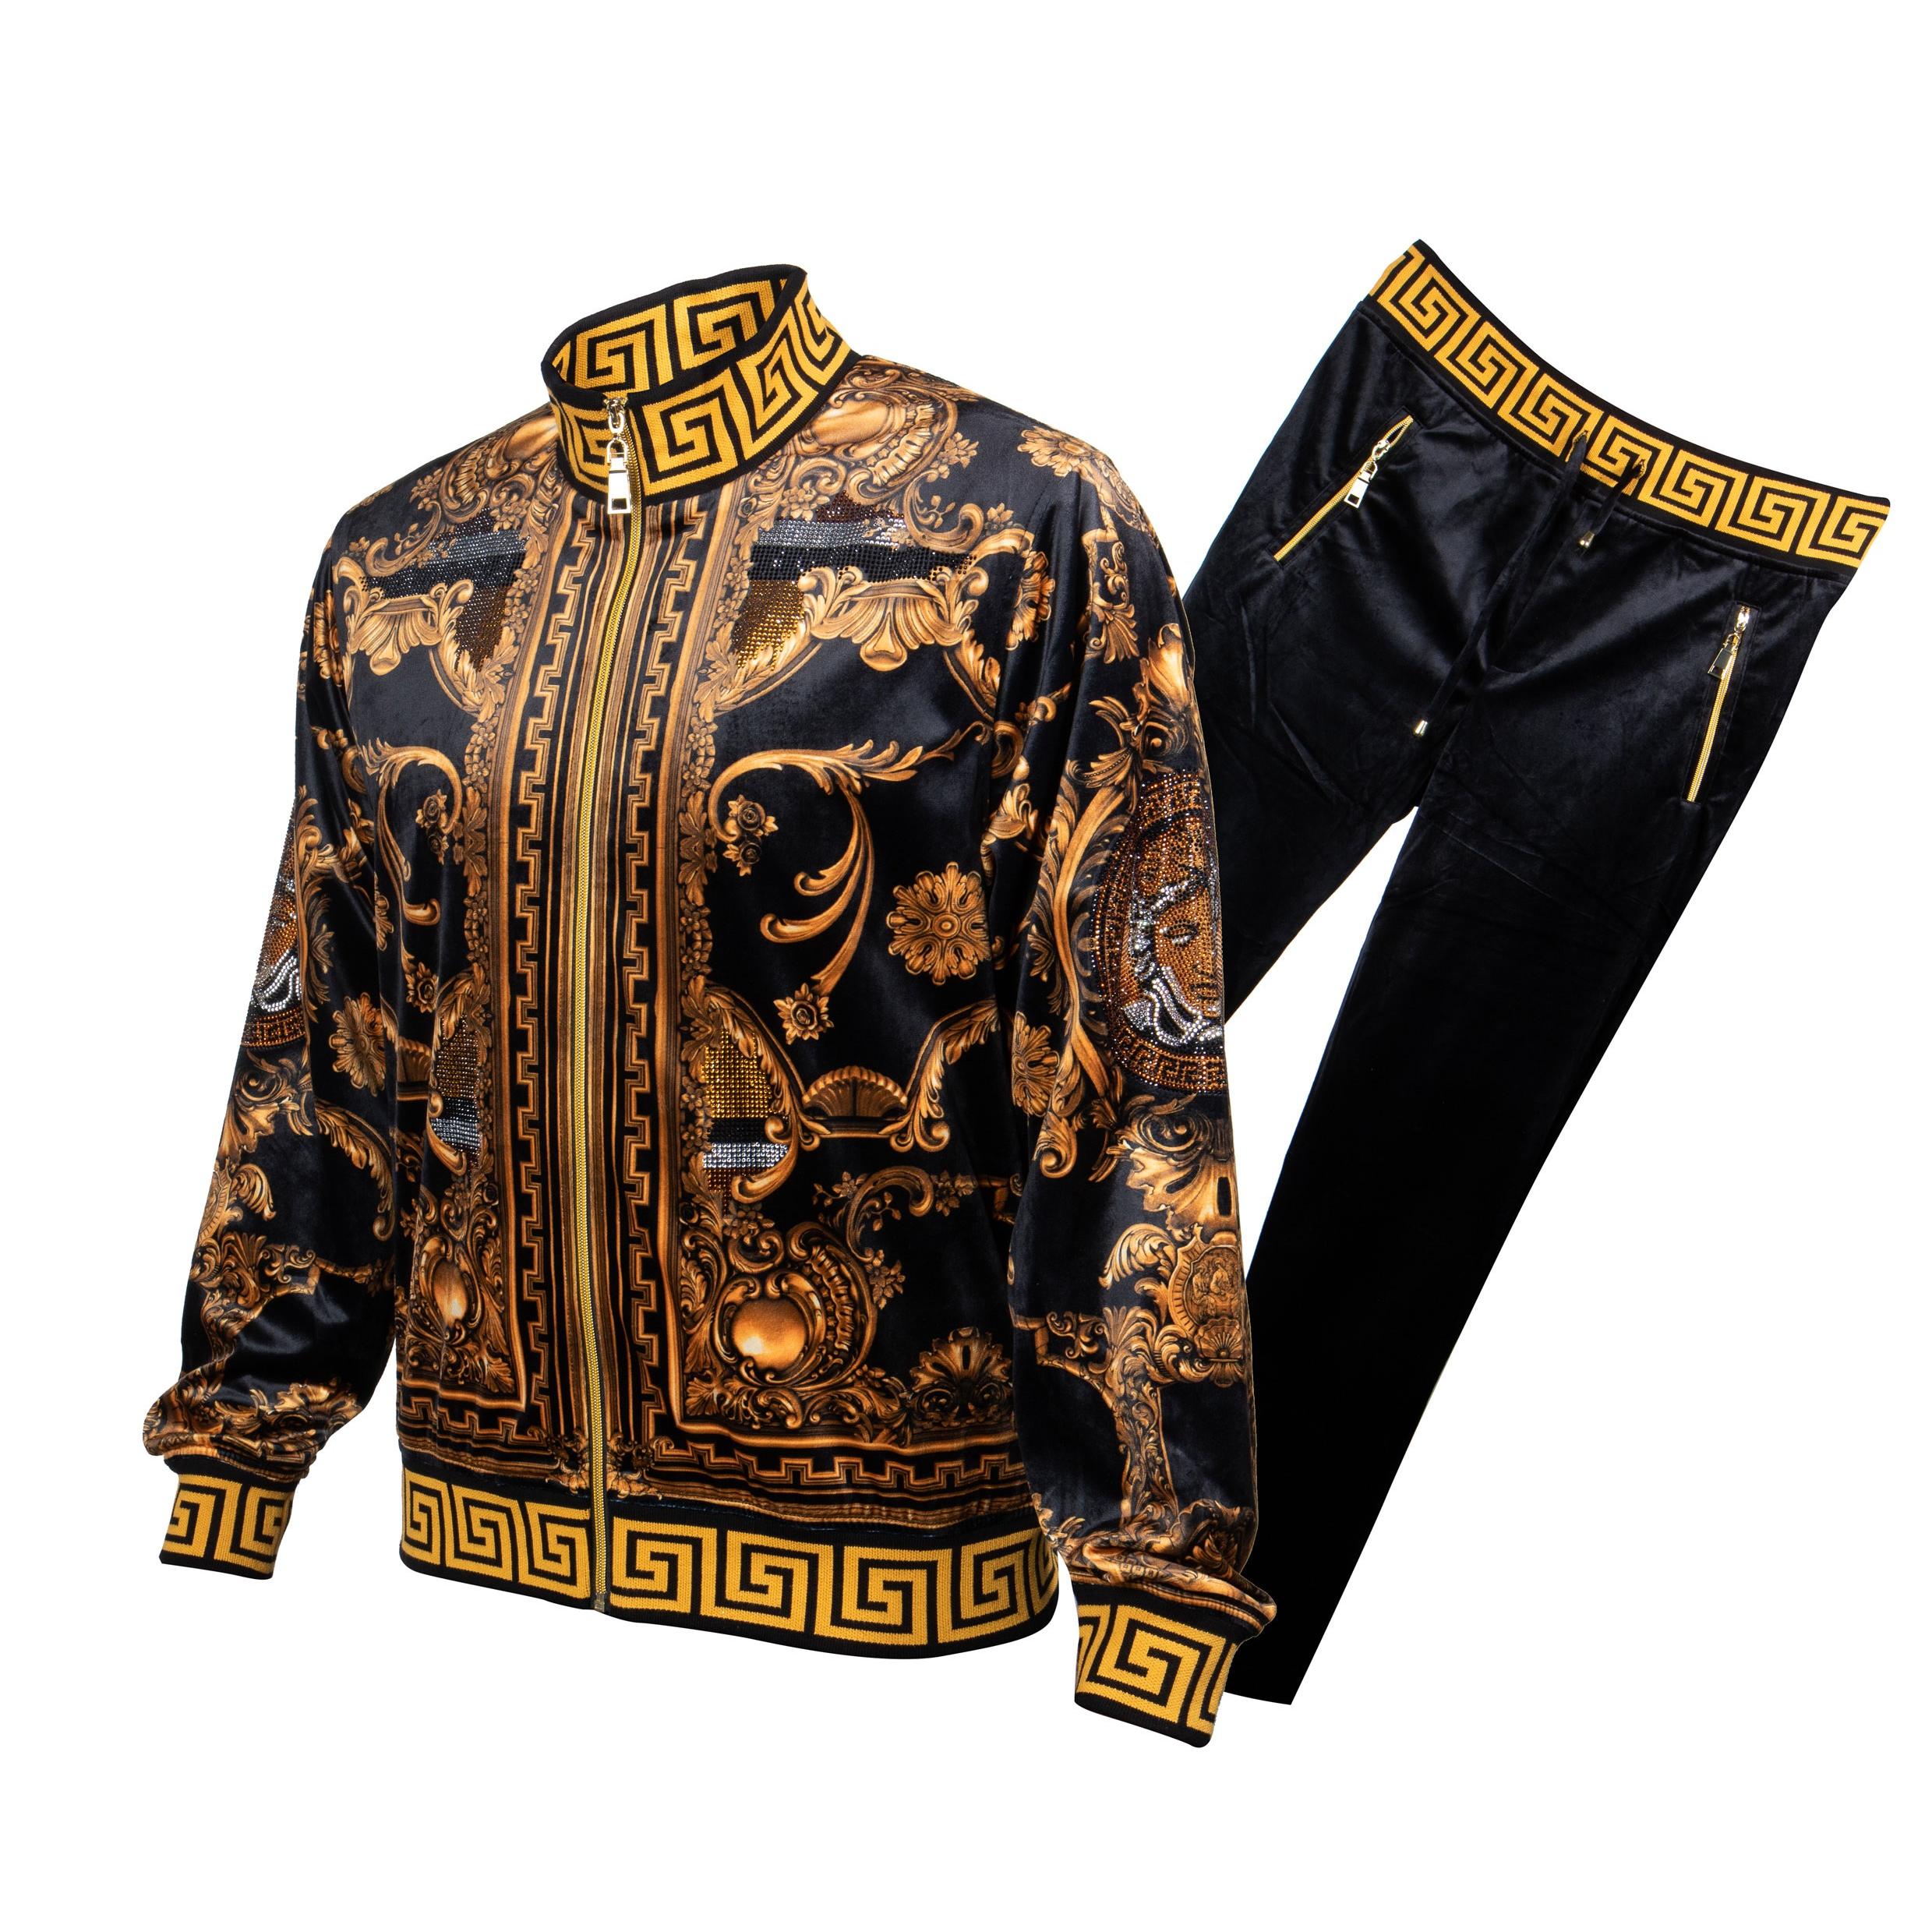 Prestige Black / Gold Crystal Studded Velour Medusa Tracksuit Outfit ...